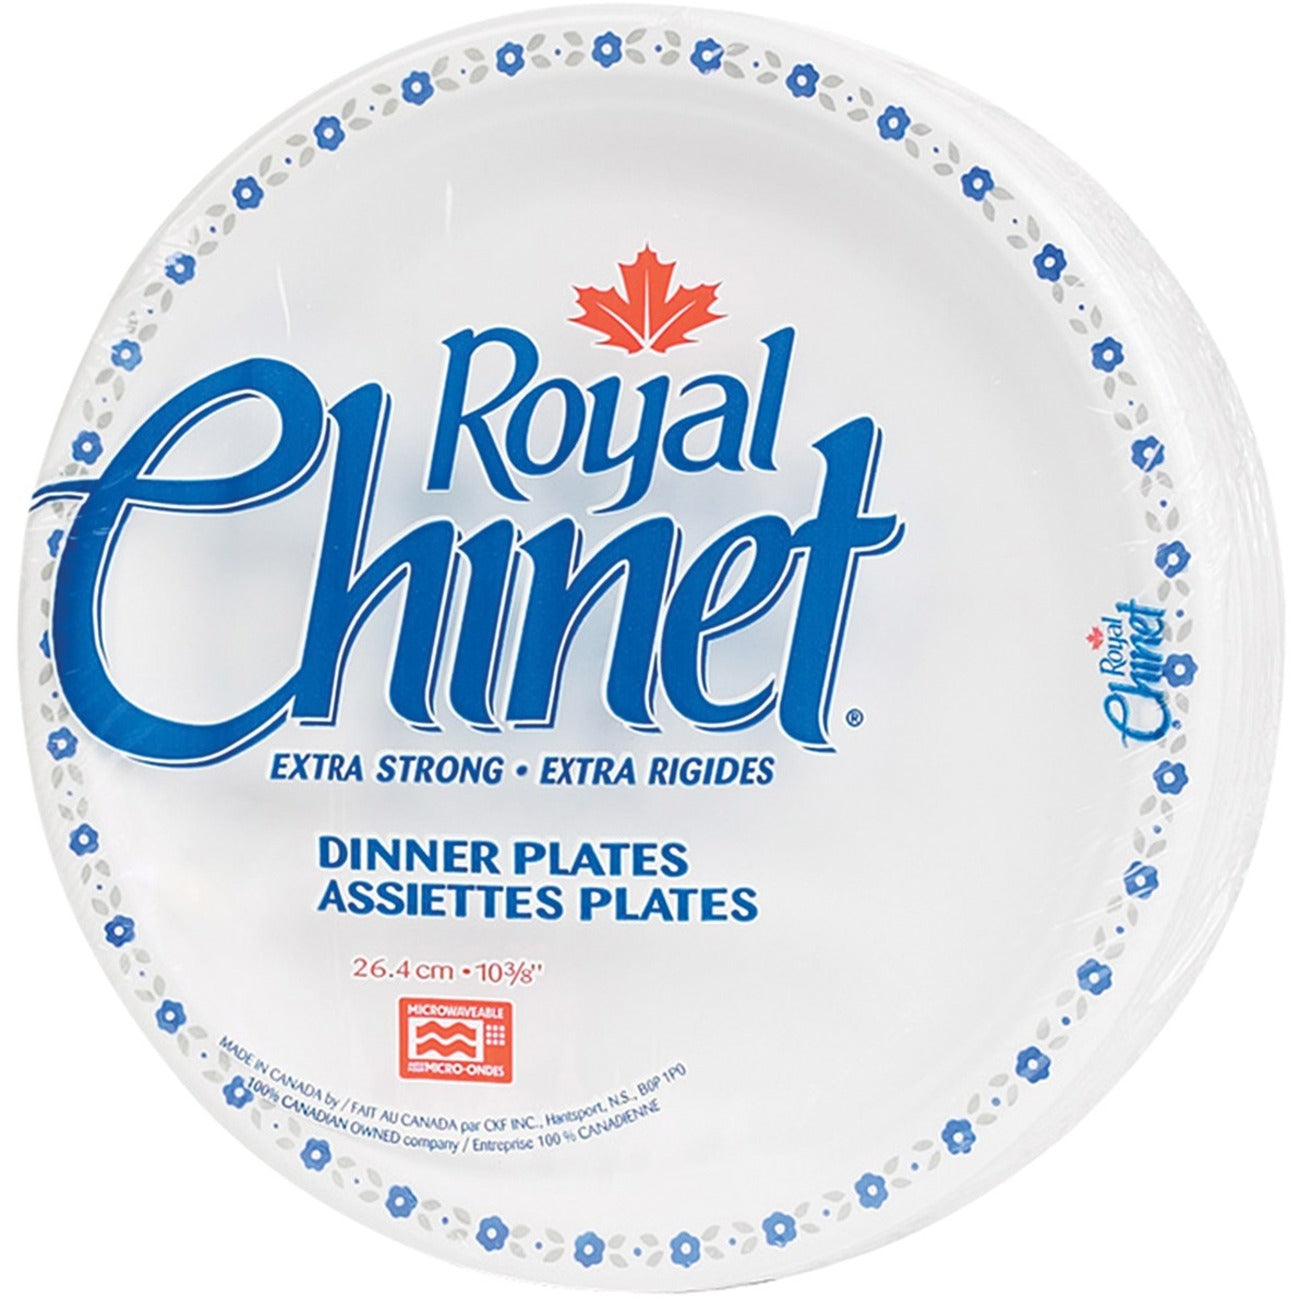 Royal Chinet Plates